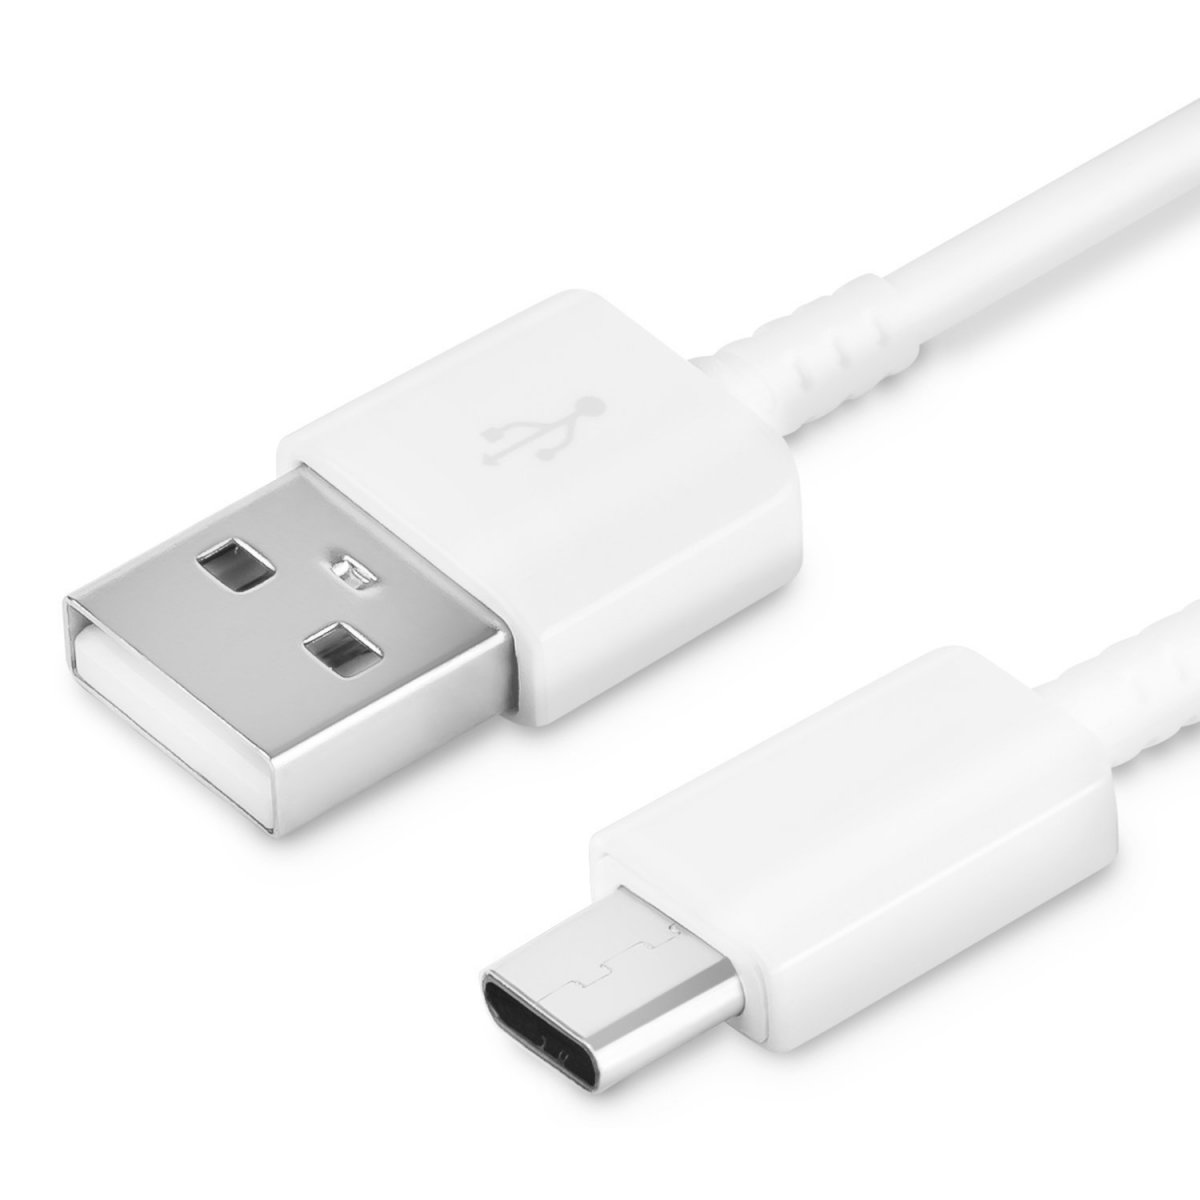 Smidig och Snabb - Vår 18 cm USB-C kabel gör laddning enklare än någonsin! Anslut och ladda med stil